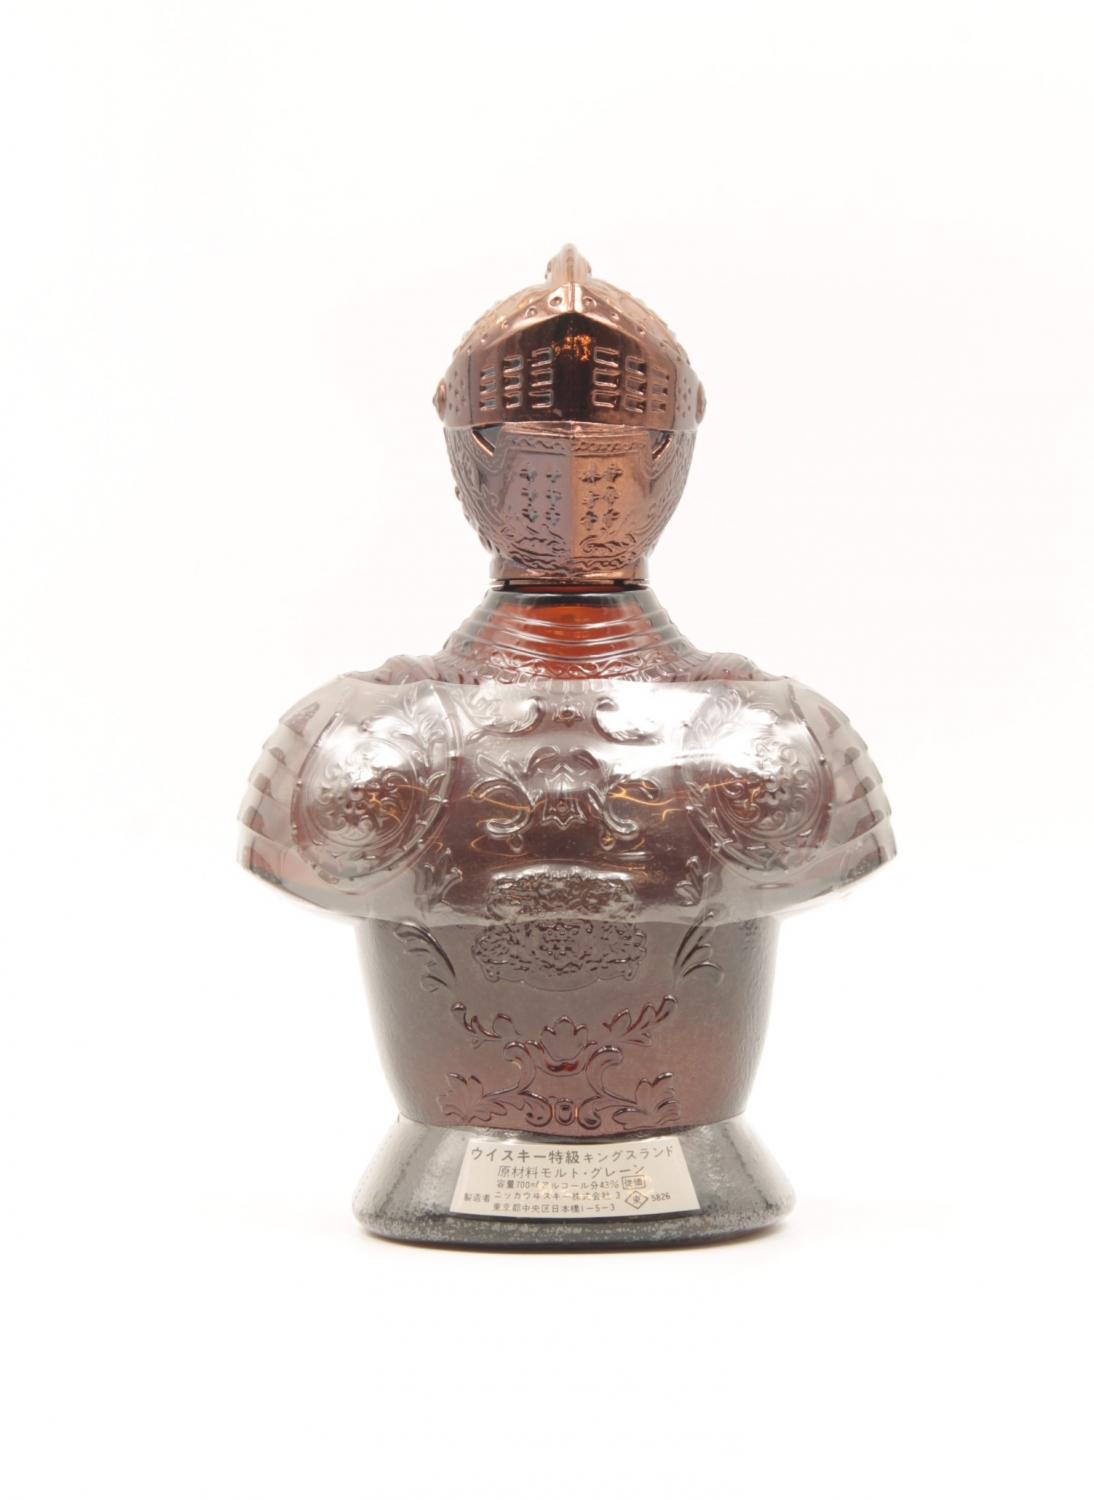 1 Nikka Knight Bottle Blended Japanese Whisky Circa 1980s Price Estimate 500 650